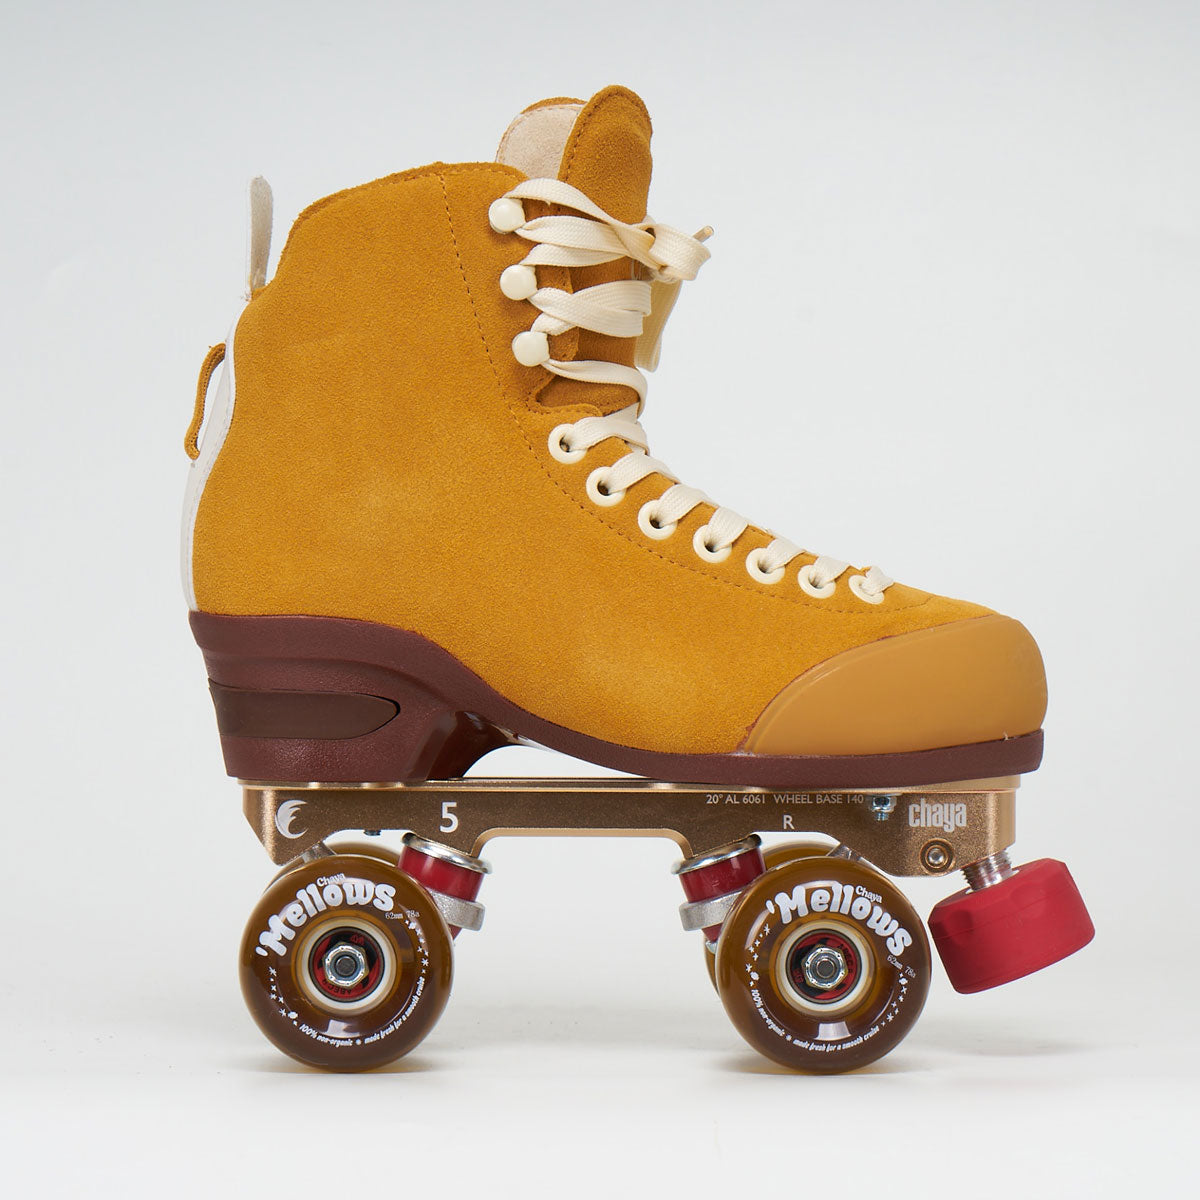 Chaya Melrose Premium Rollerskates - Maple Syrup